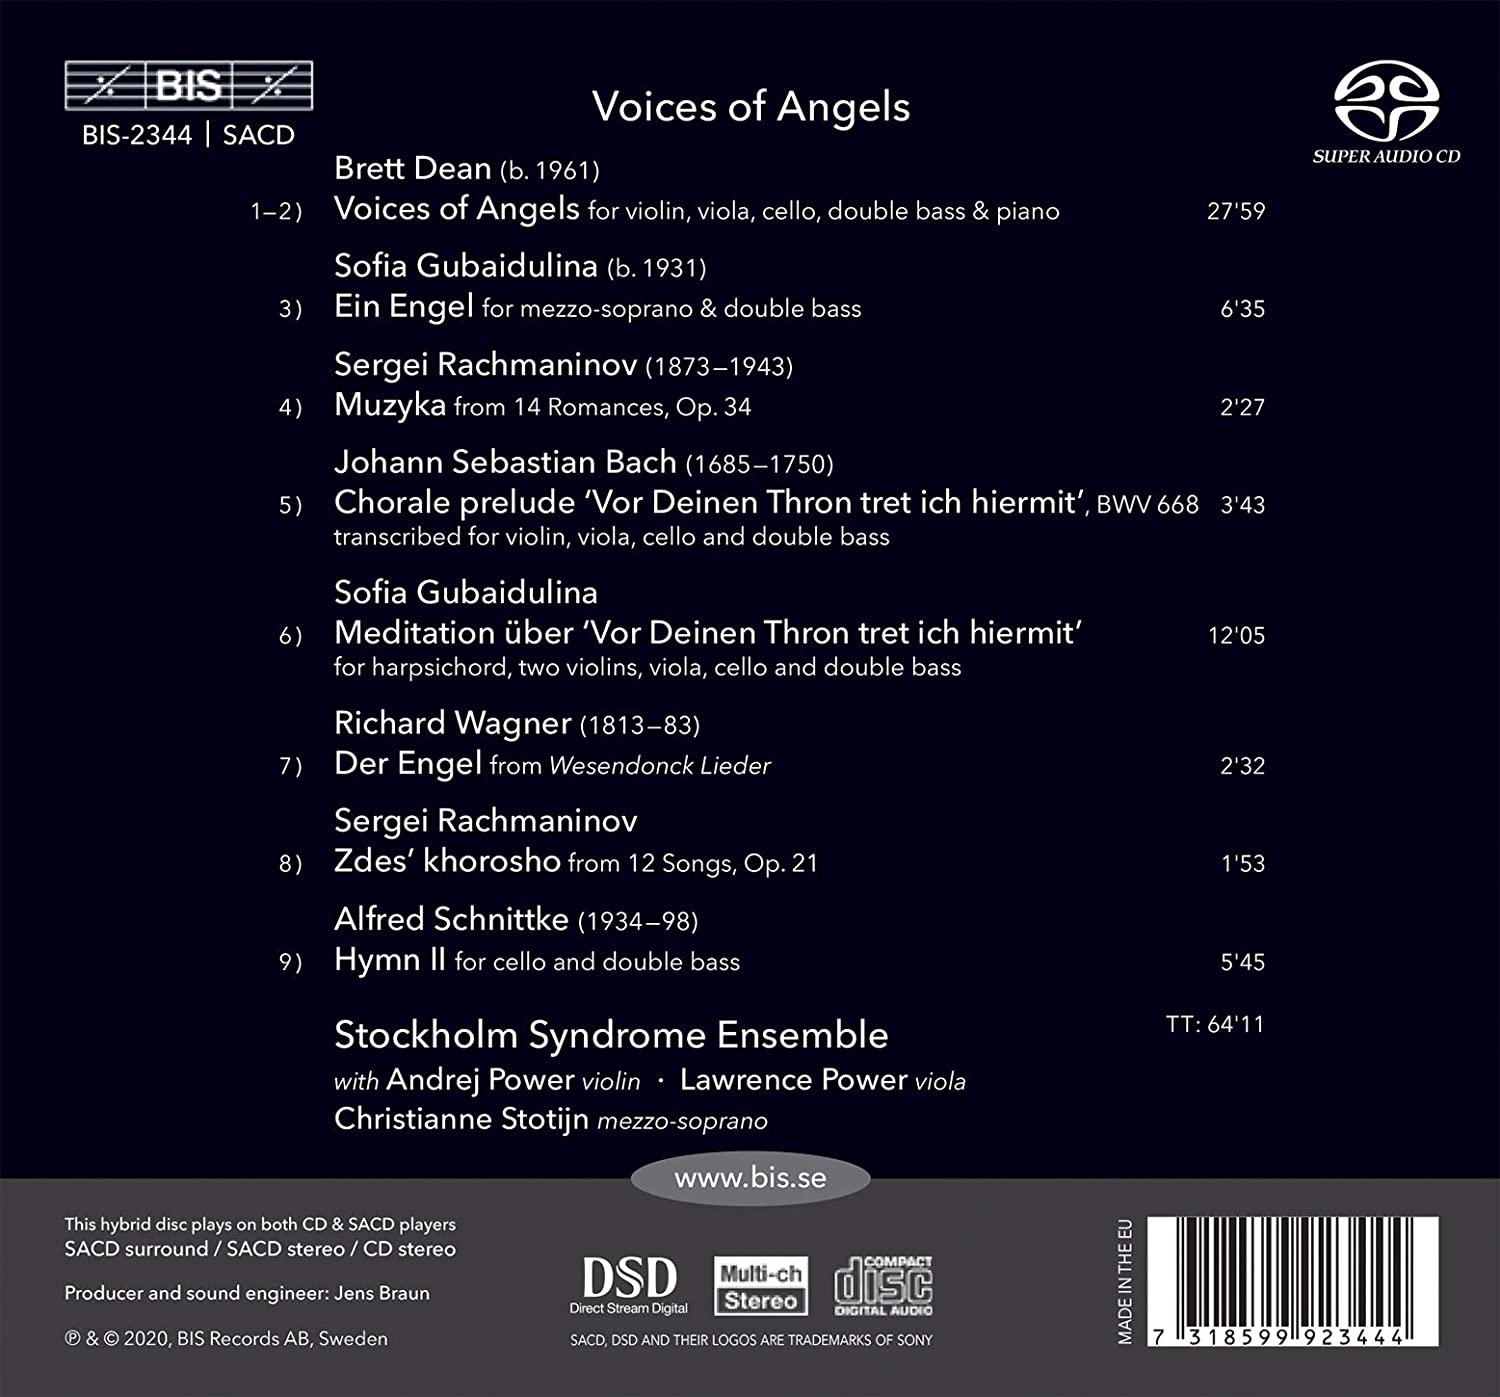 Stockholm Syndrome Ensemble 스톡홀름 신드롬 앙상블 연주집 (Voices of Angels)